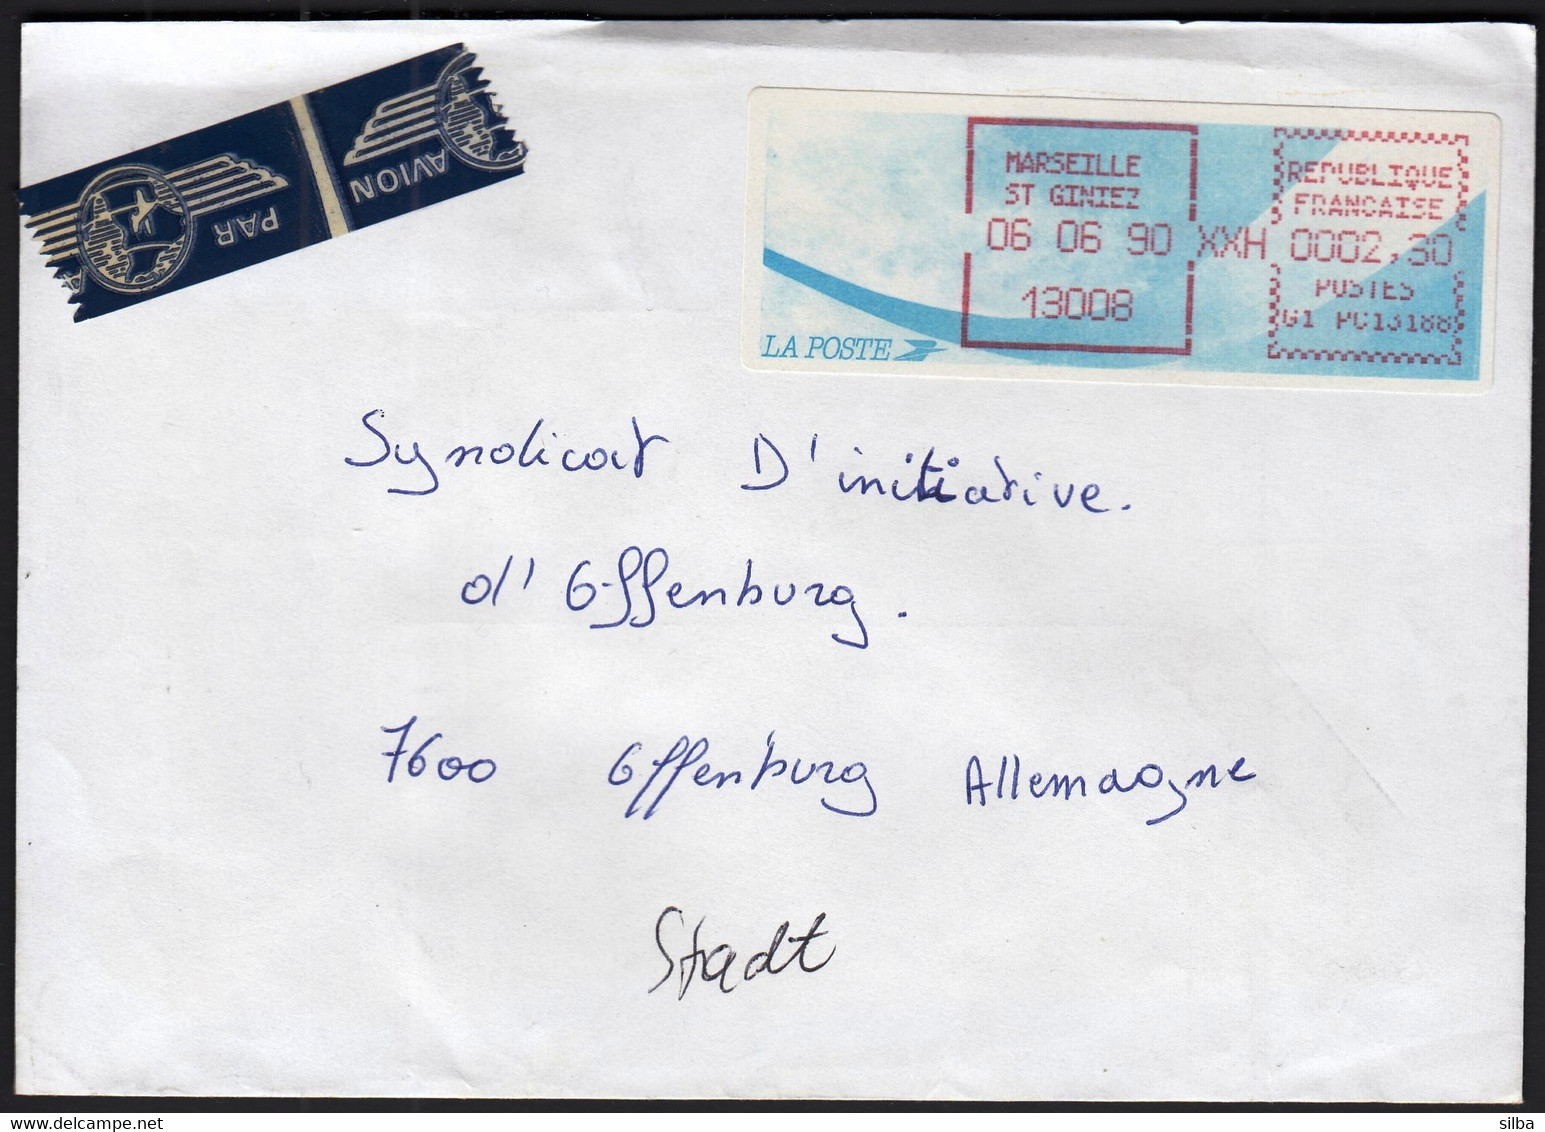 France 1990 / Marseille St. Giniez / Franking Label / Machine Stamp, Automat - 1990 « Oiseaux De Jubert »